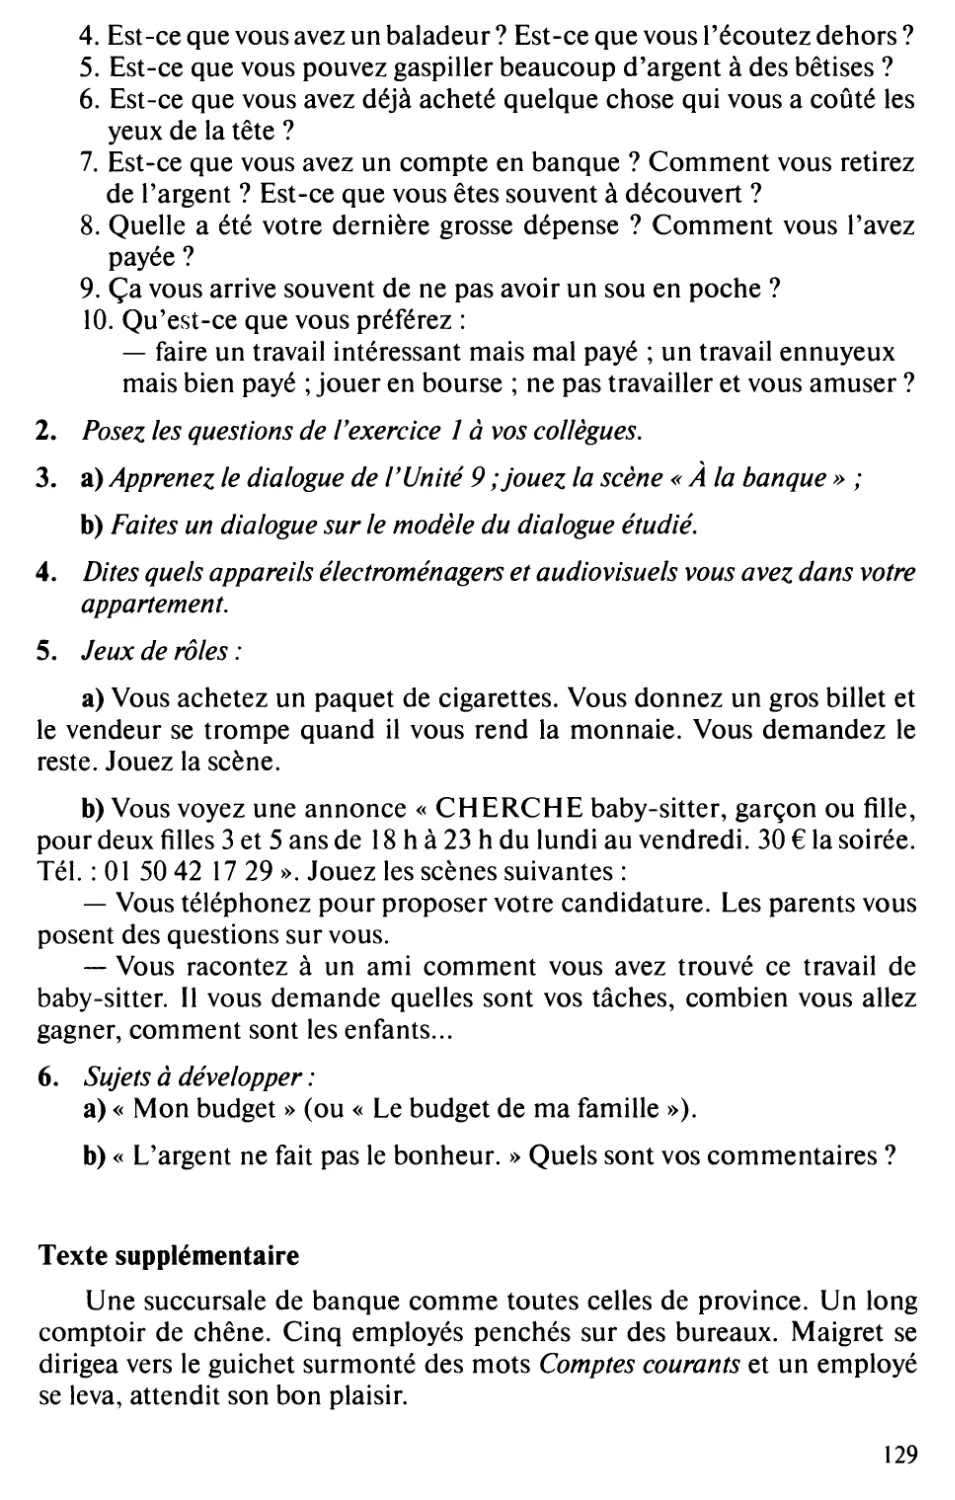 Texte supplémentaire : Georges Simenon, L’affaire Saint-Fiacre